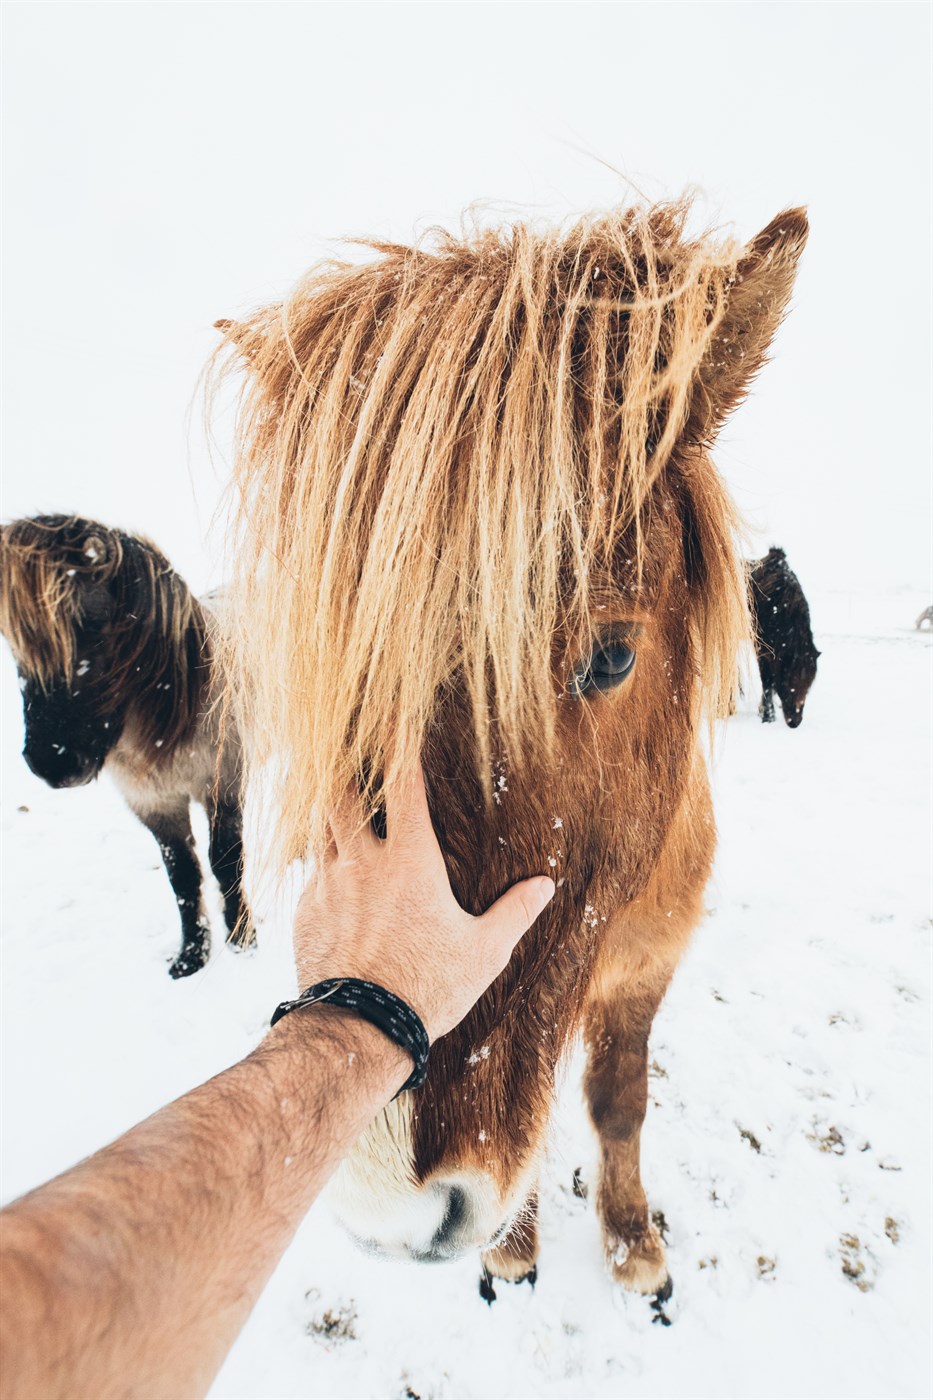 chevaux islandais sur de la neige en hiver en islande